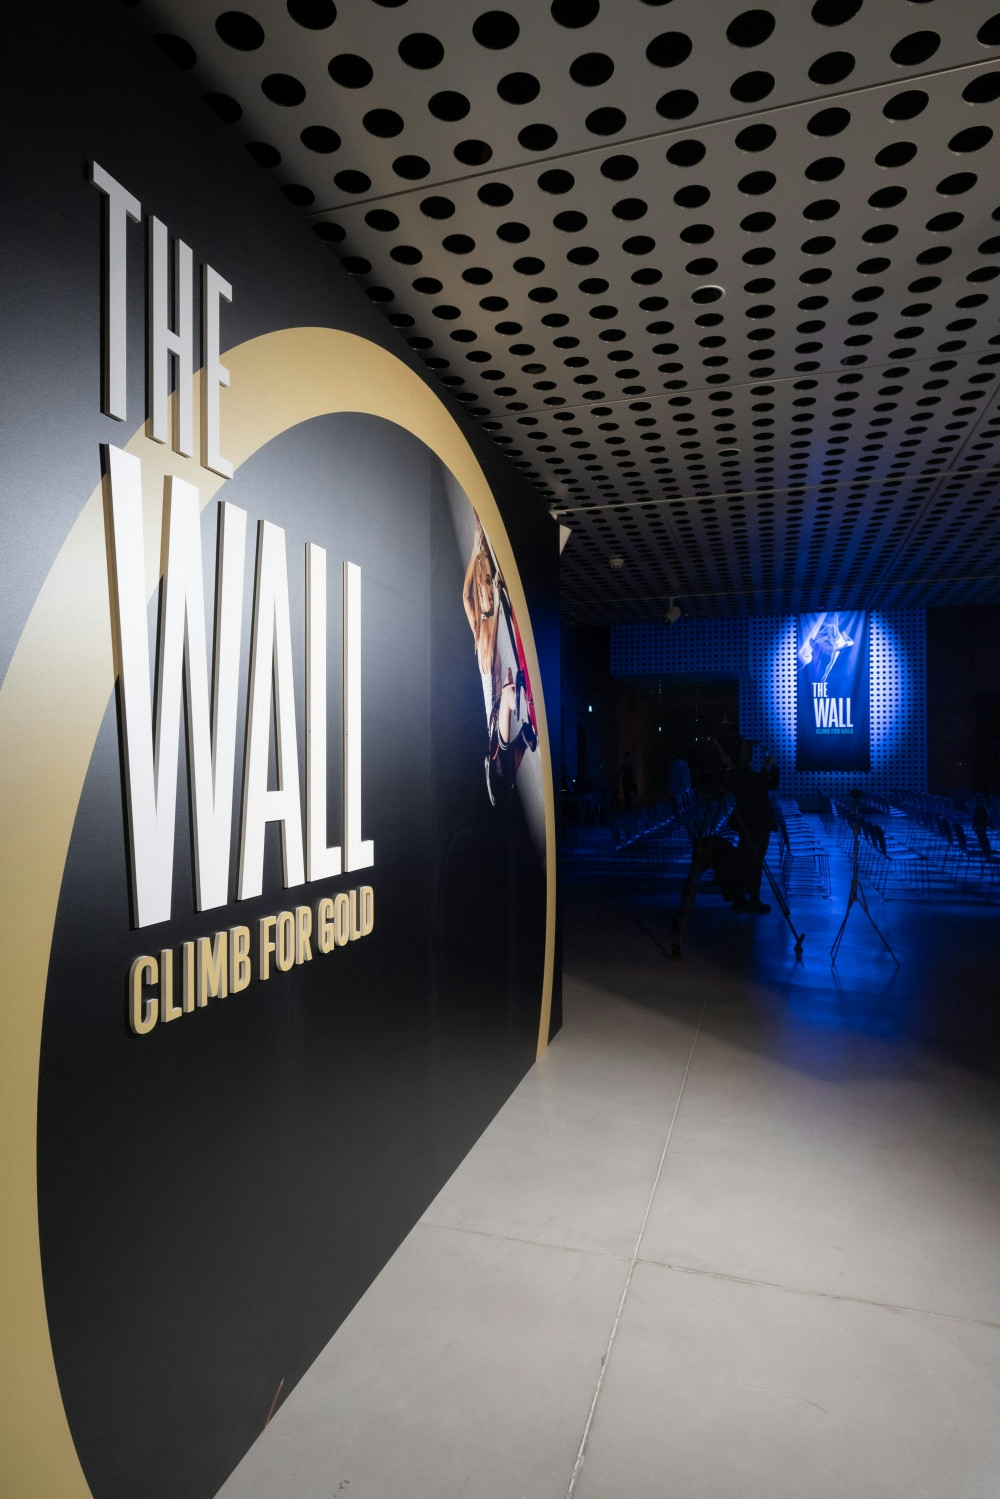 Organizacija predpremiere filma The Wall - Climb for Gold v Cukrarni v Ljubljani. Organizacija zabav Paideia Events.